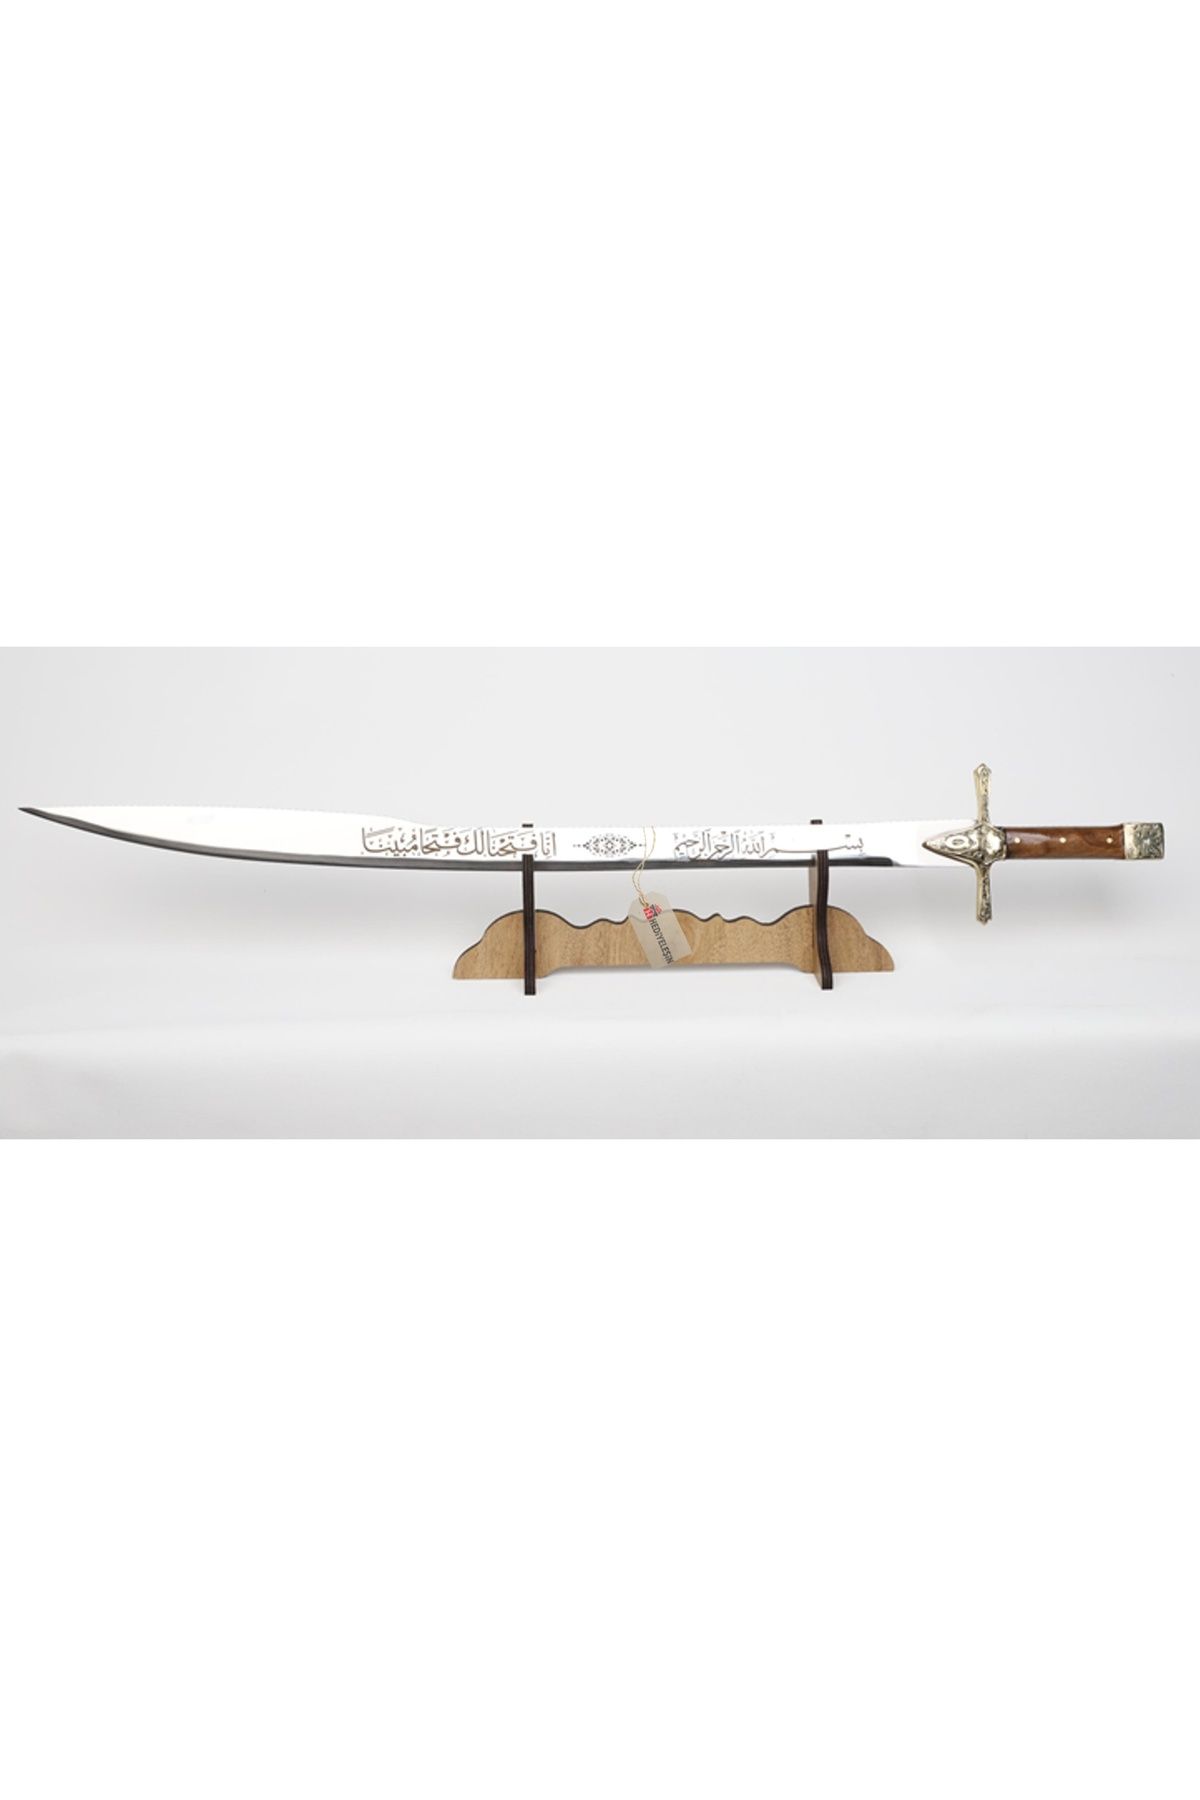 Hediyeleşin Kılıç, Dekoratif Amaçlıdır, Çelik, FATİH - 70 cm.